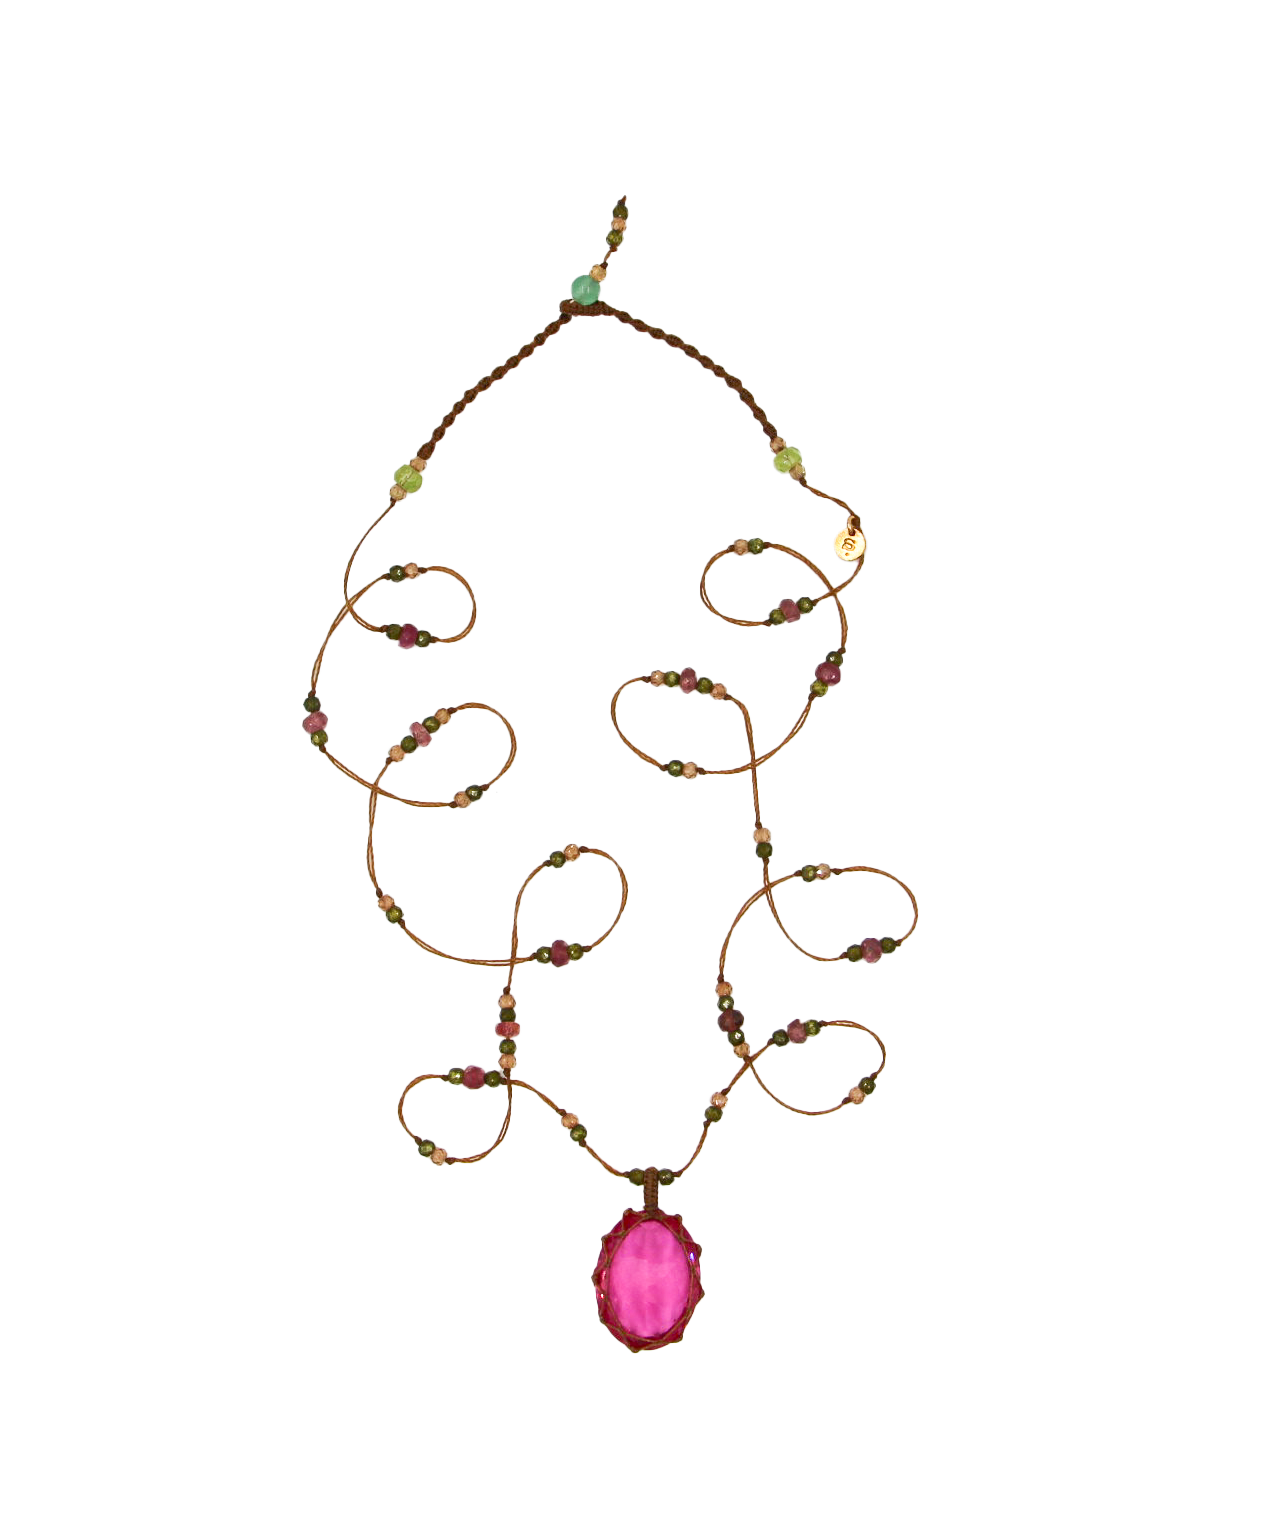 Tibetan Long Necklace - Red Indian Glass - Mix Tsavorite - Beige Thread